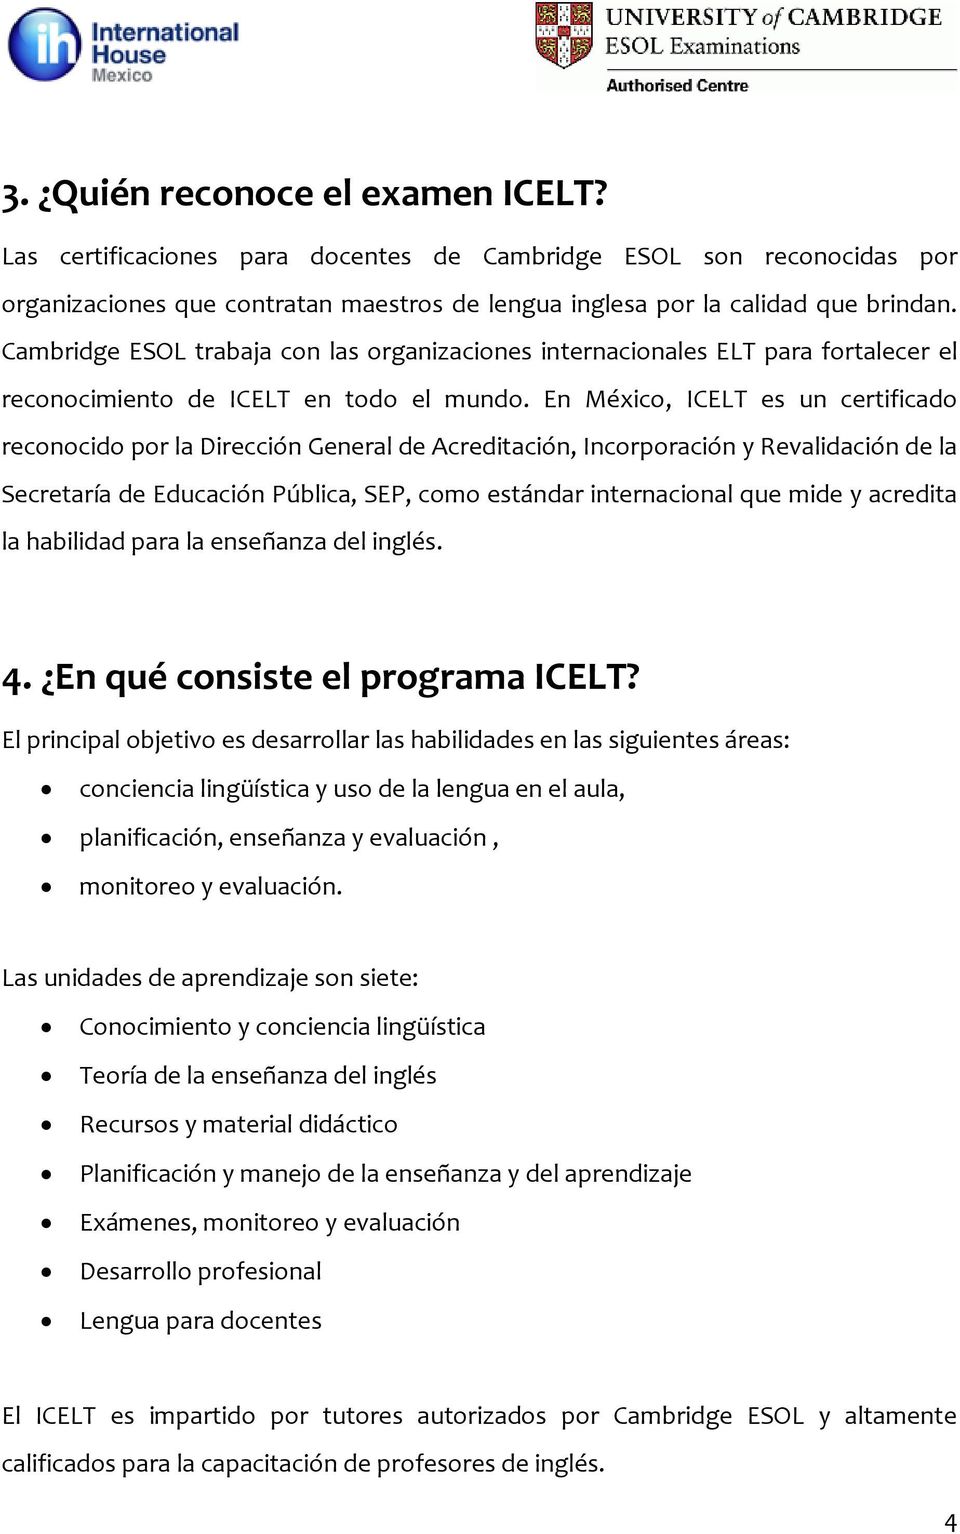 En México, ICELT es un certificado reconocido por la Dirección General de Acreditación, Incorporación y Revalidación de la Secretaría de Educación Pública, SEP, como estándar internacional que mide y